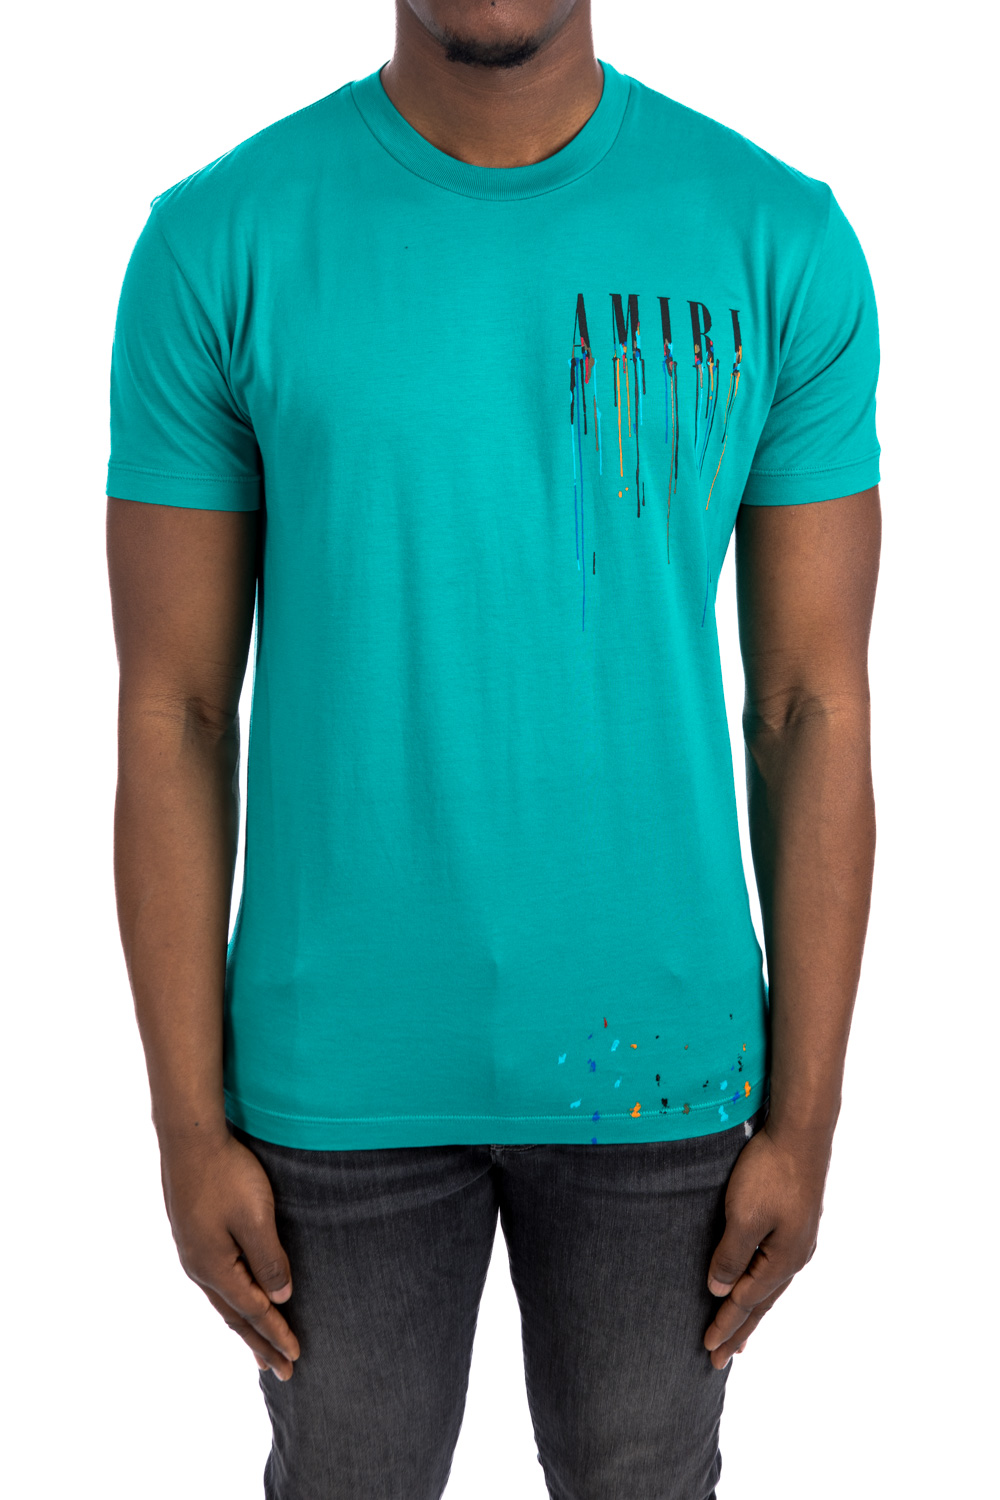 Rhud Amiri Paint Drip Shirt - Kingteeshop